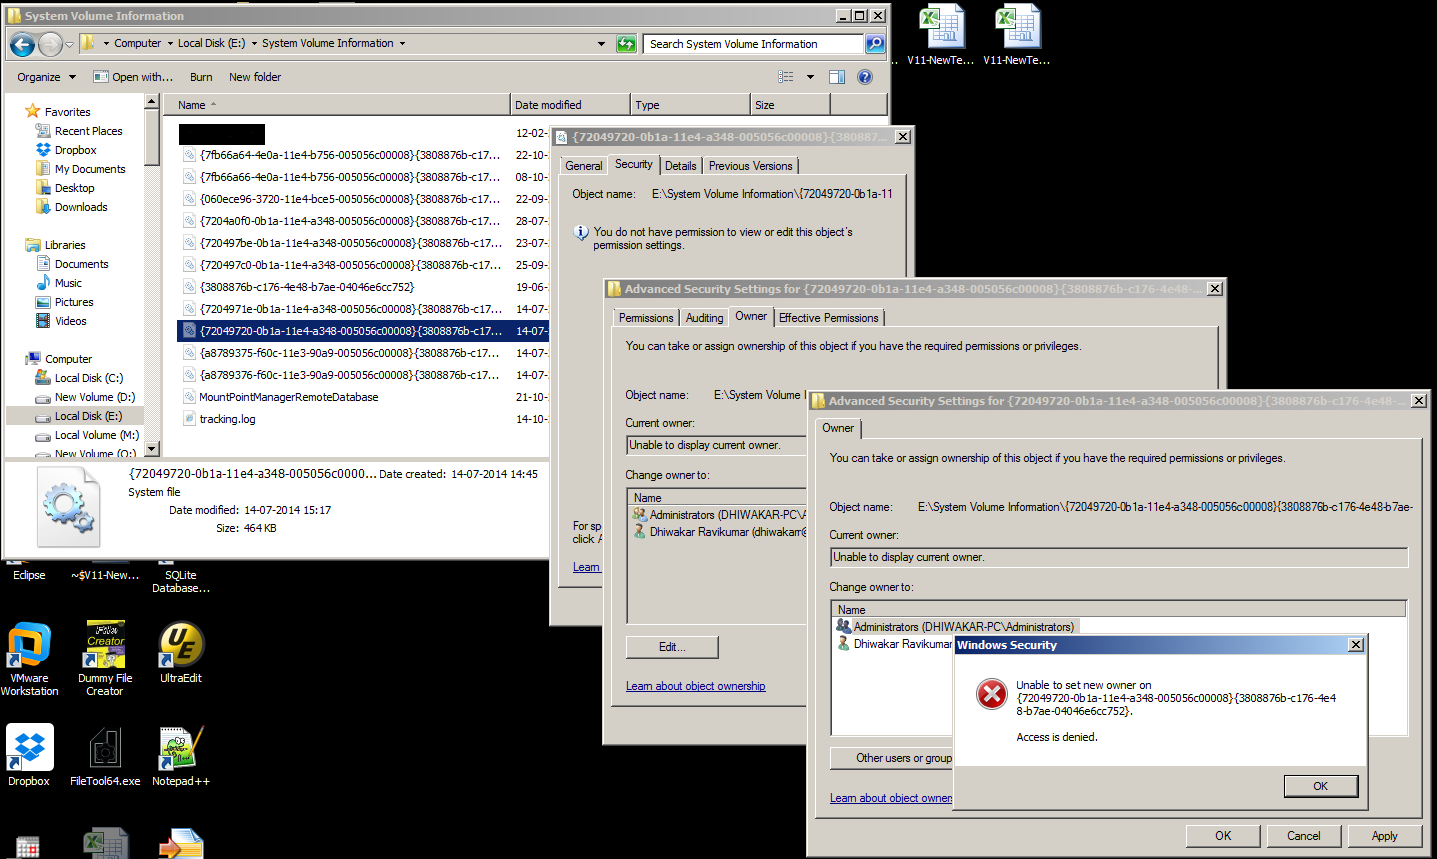 l'accesso alla cartella di Windows 7 non è in grado di visualizzare il proprietario corrente